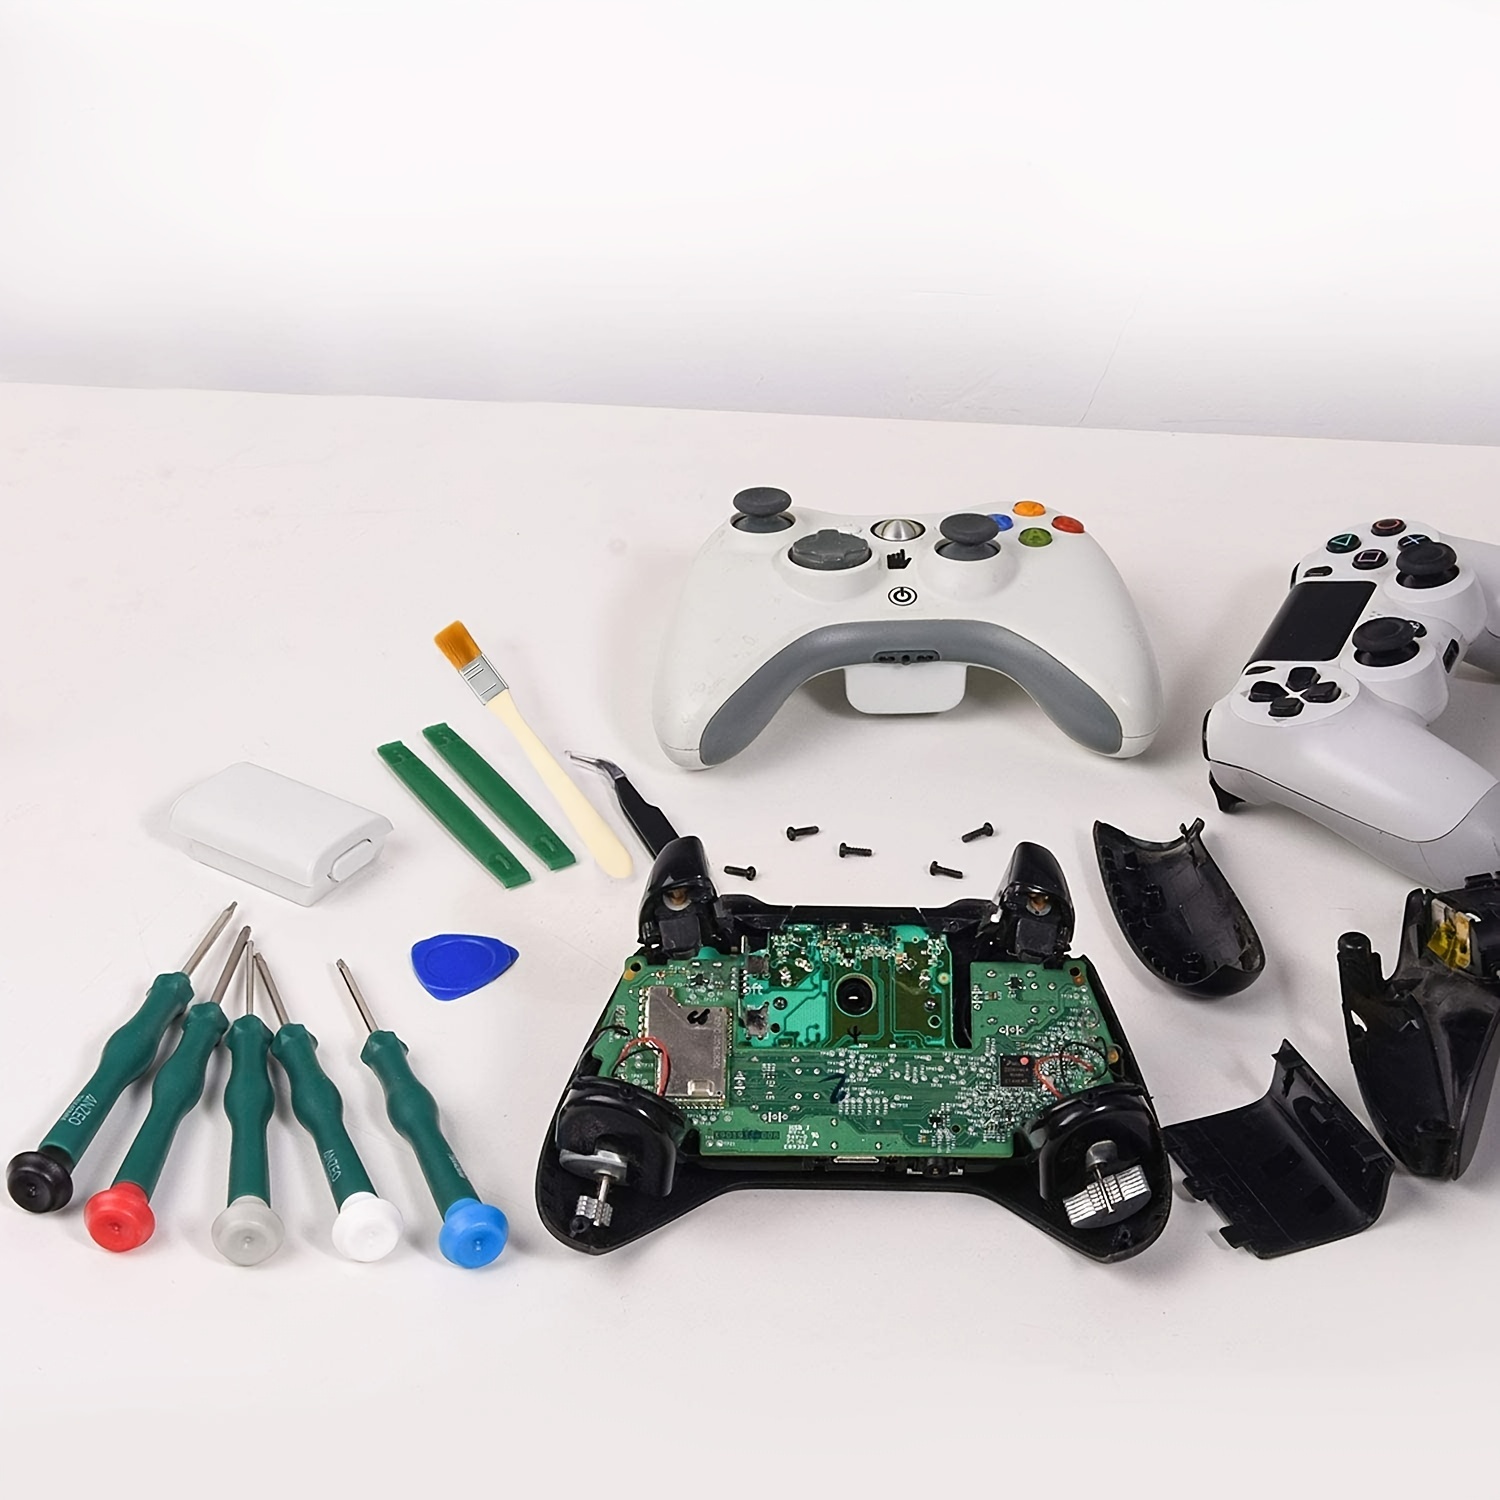 Kit de herramientas de reparación de limpieza para PS3 PS4 PS5, con PH00  PH0 PH0 PH1 y T8 Torx destornillador de seguridad, palancas, pinzas,  cepillo